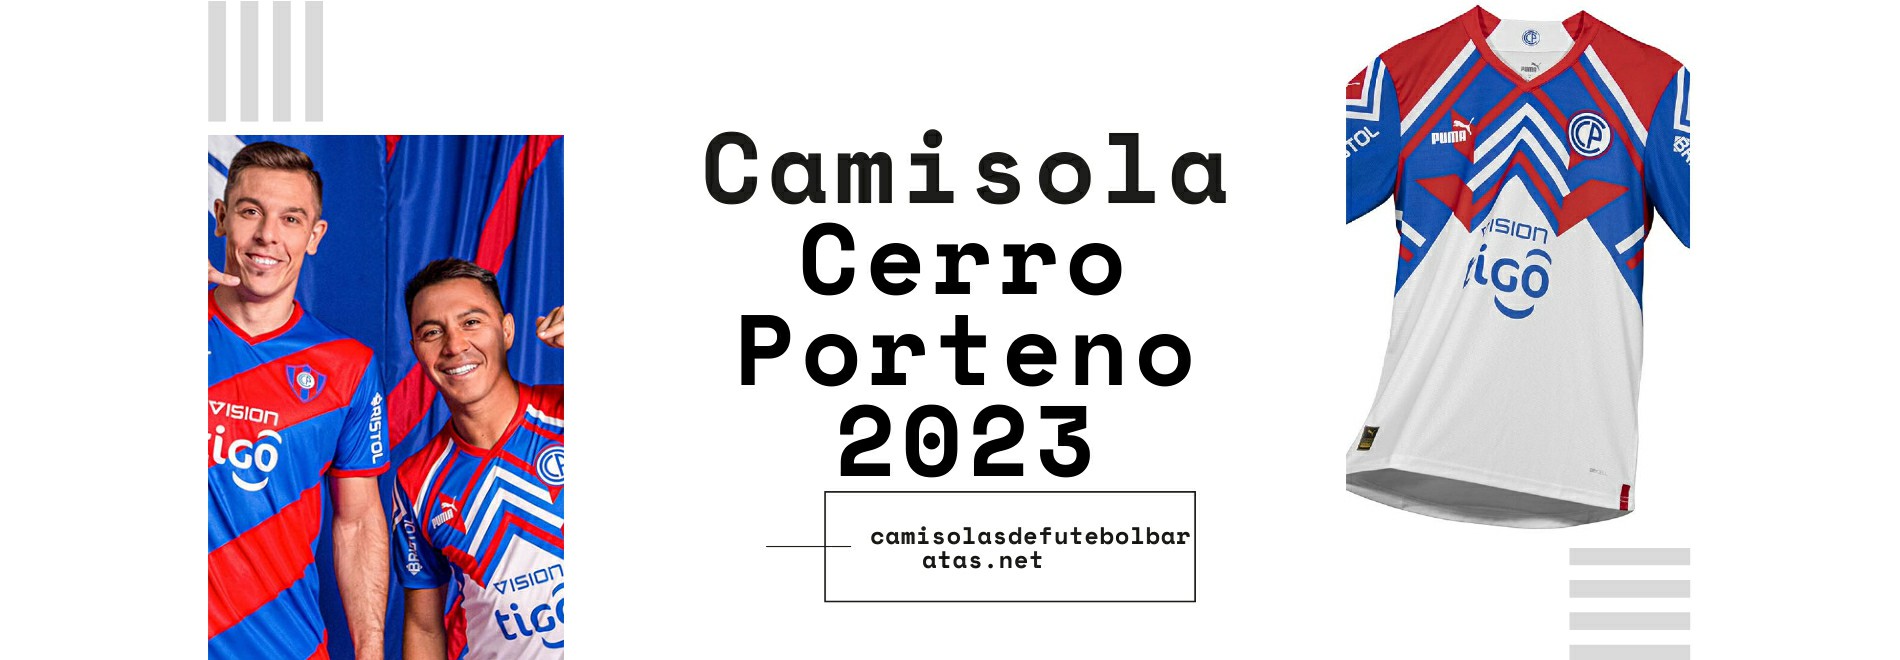 Camisola Cerro Porteno 2023-2024